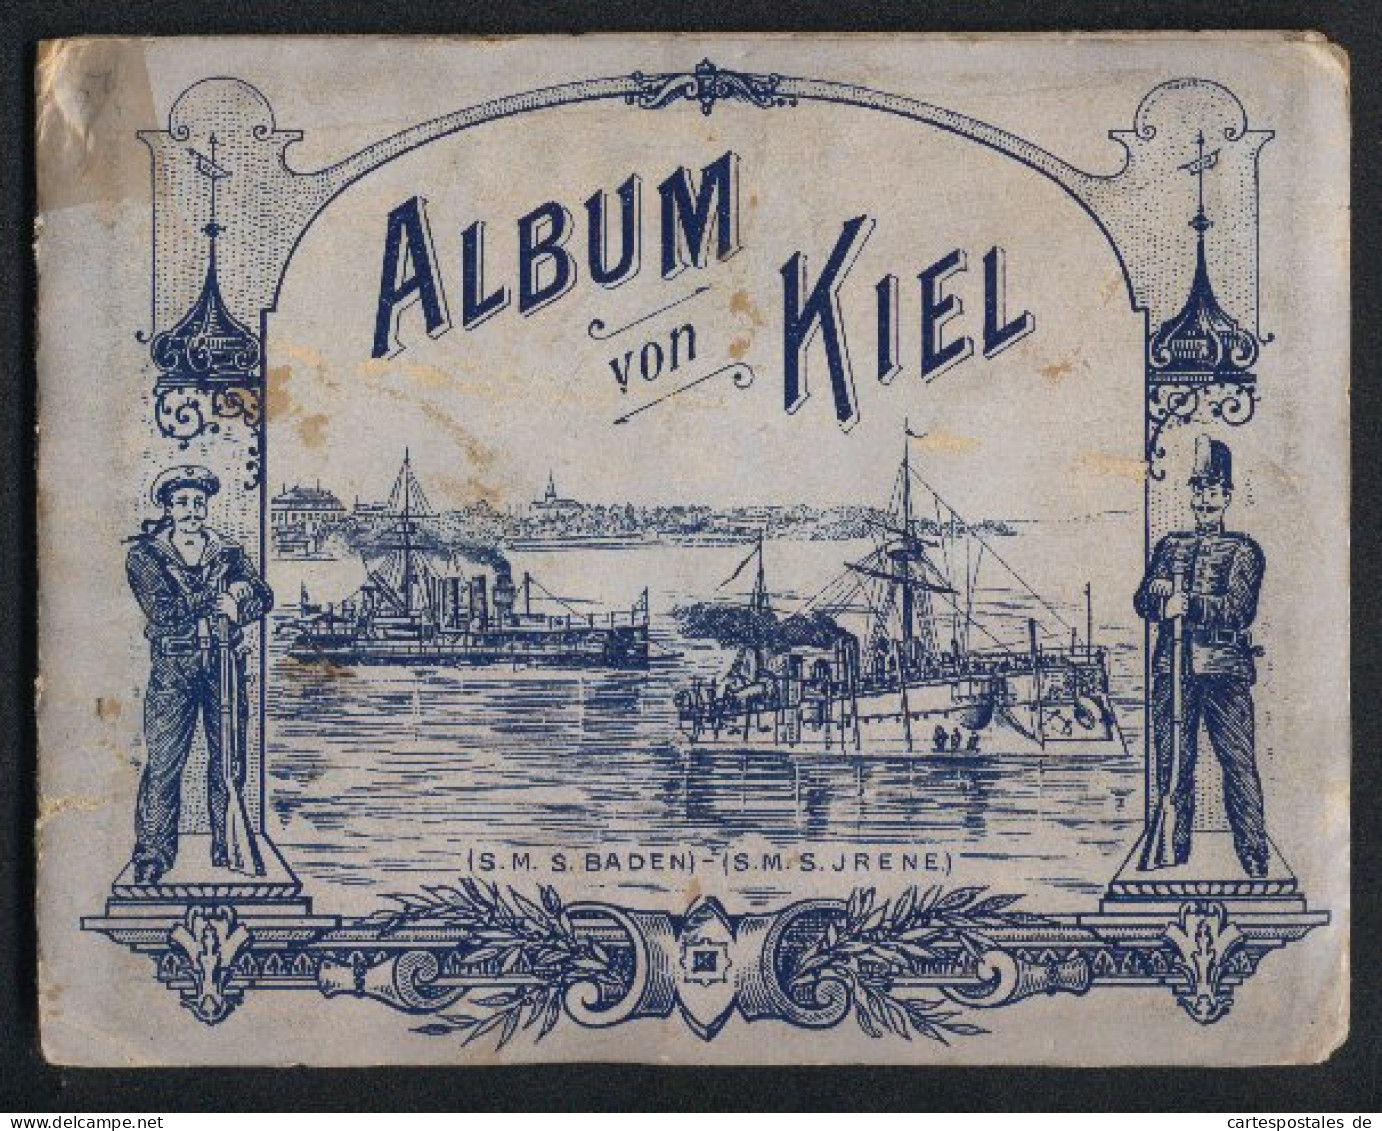 Leporello-Album Kiel Mit 13 Lithographie-Ansichten, Kaiserliche Werft, Panorama Mit Kriegshafen, Marine Akademie, Uni  - Litografia